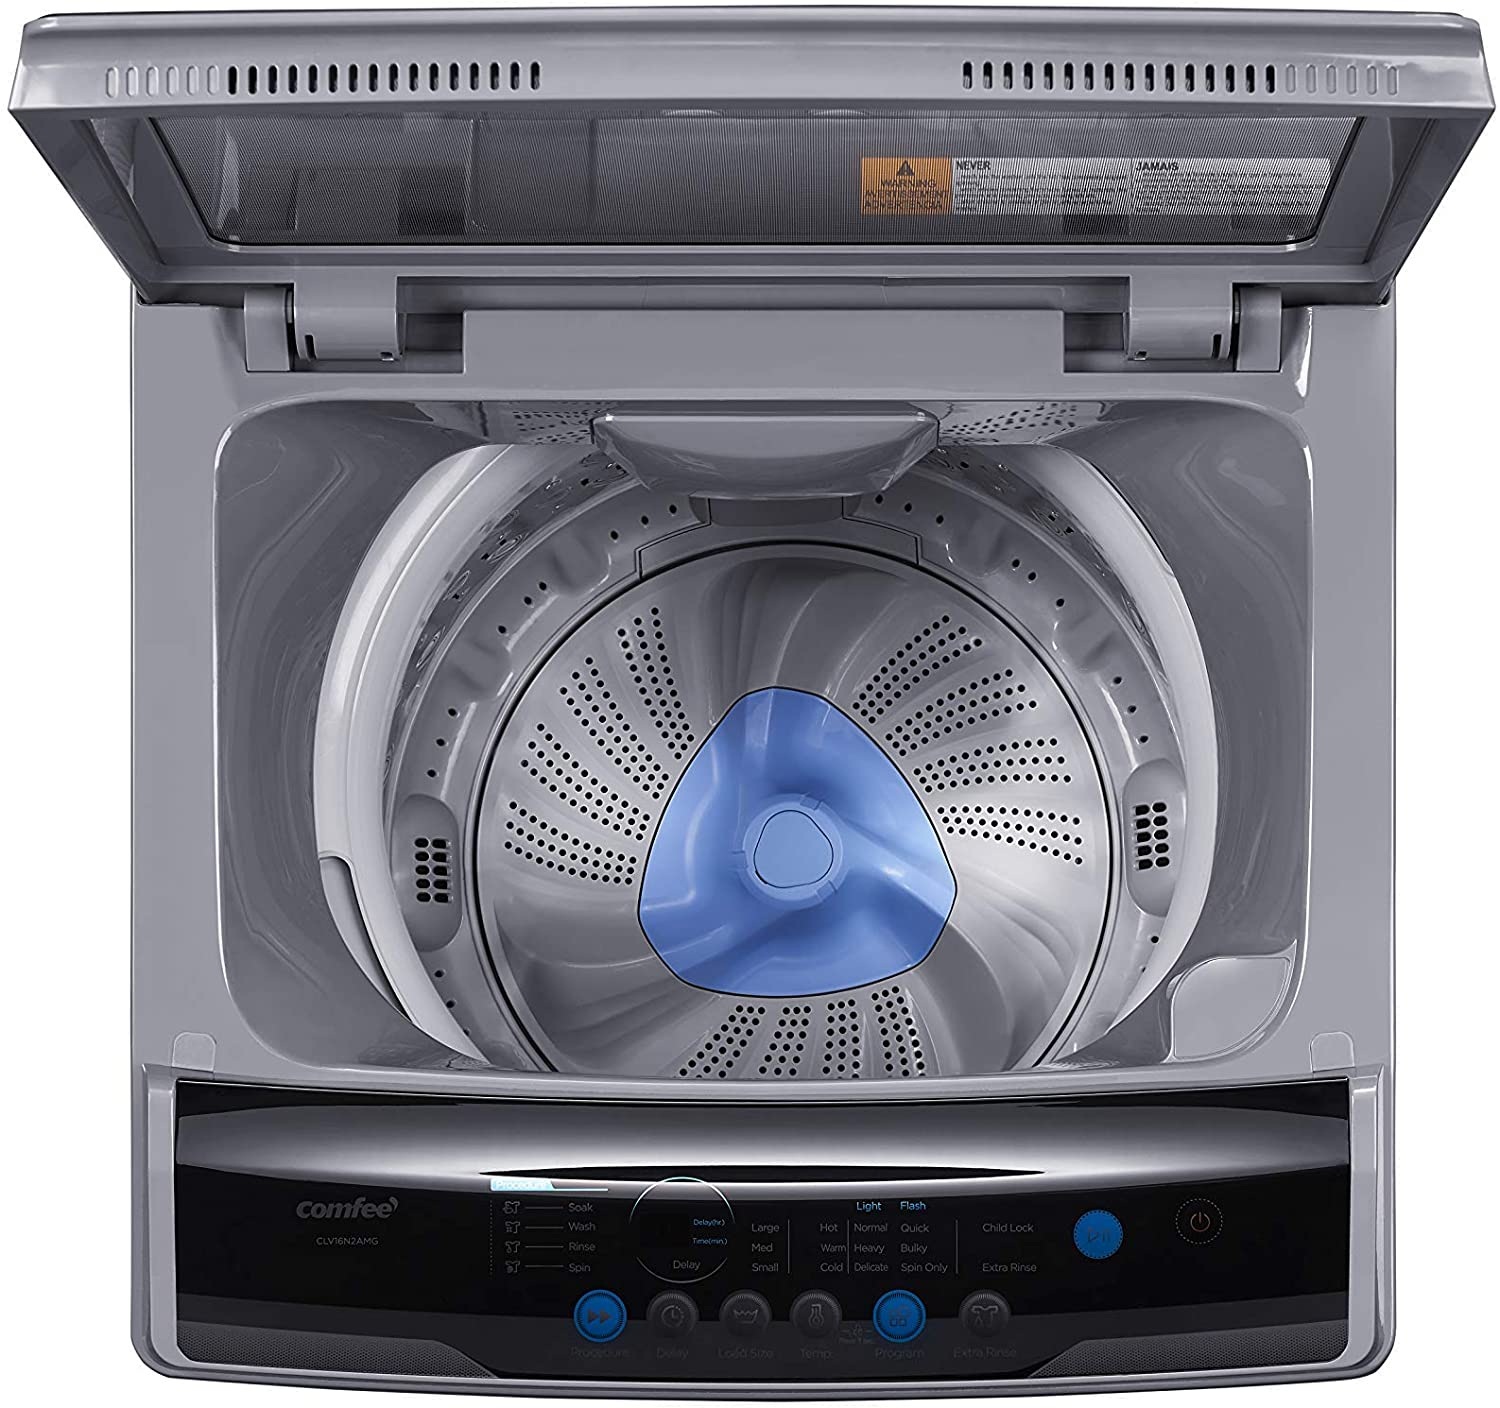 COMFEE' 1.6 Cu.ft lavadora portátil, capacidad de 11 libras totalmente automática lavadora compacta con ruedas, 6 programas de lavado Lavadora con bomba de drenaje, ideal para apartamentos, RV, camping, gris magnético